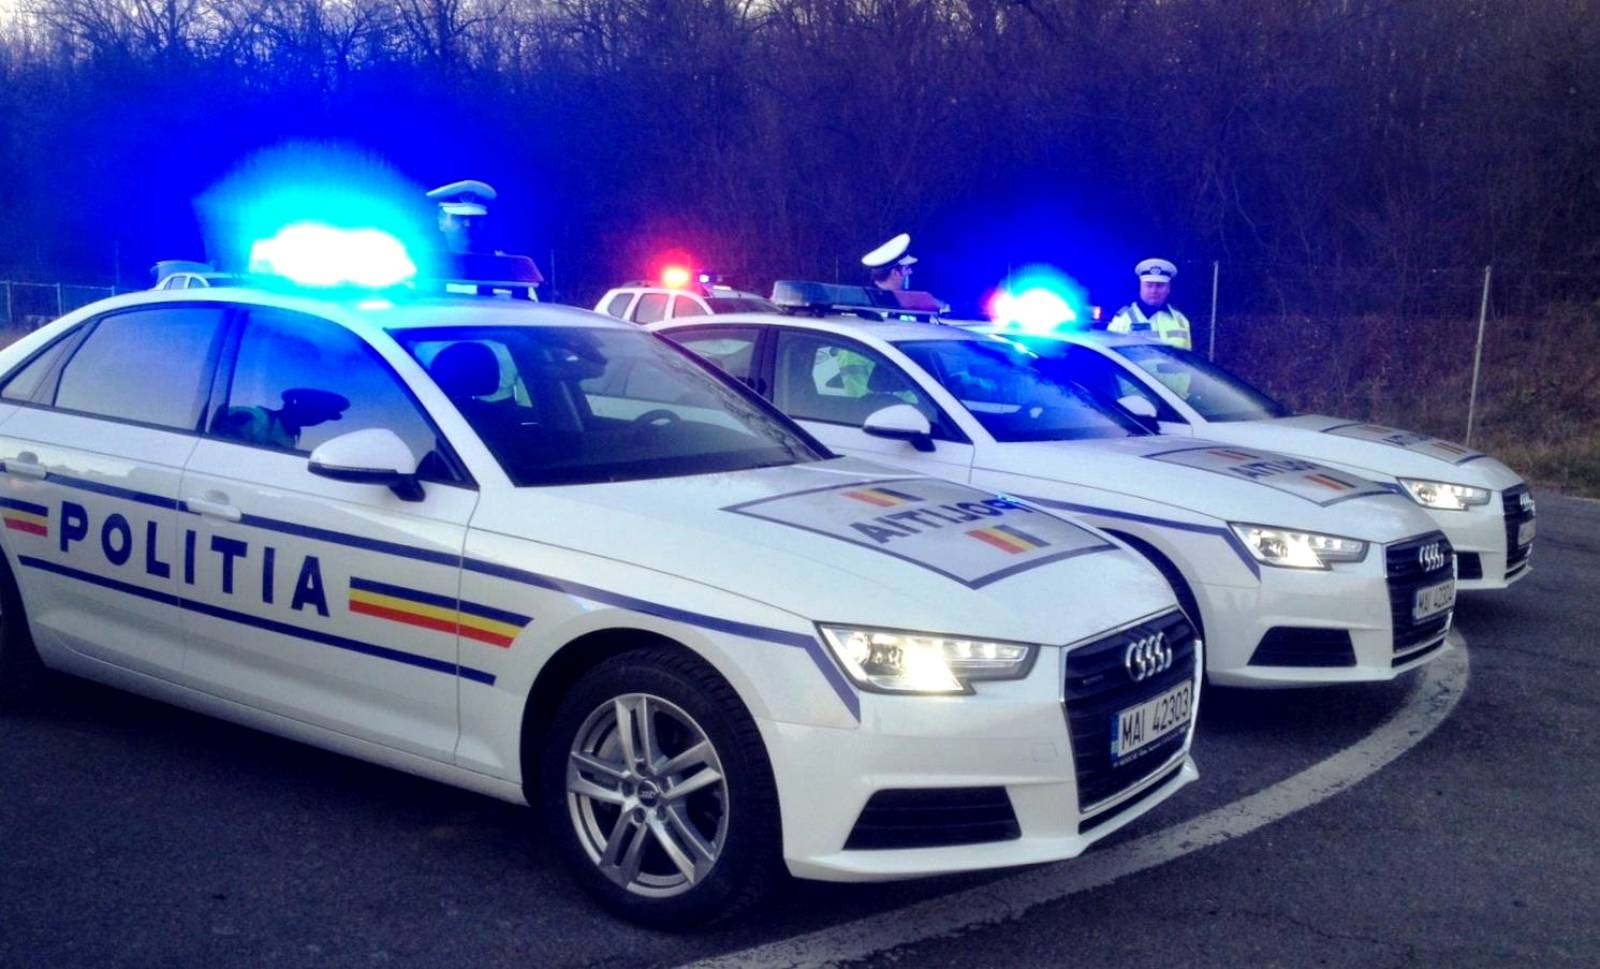 Uwaga rumuńska policja, zapobieganie